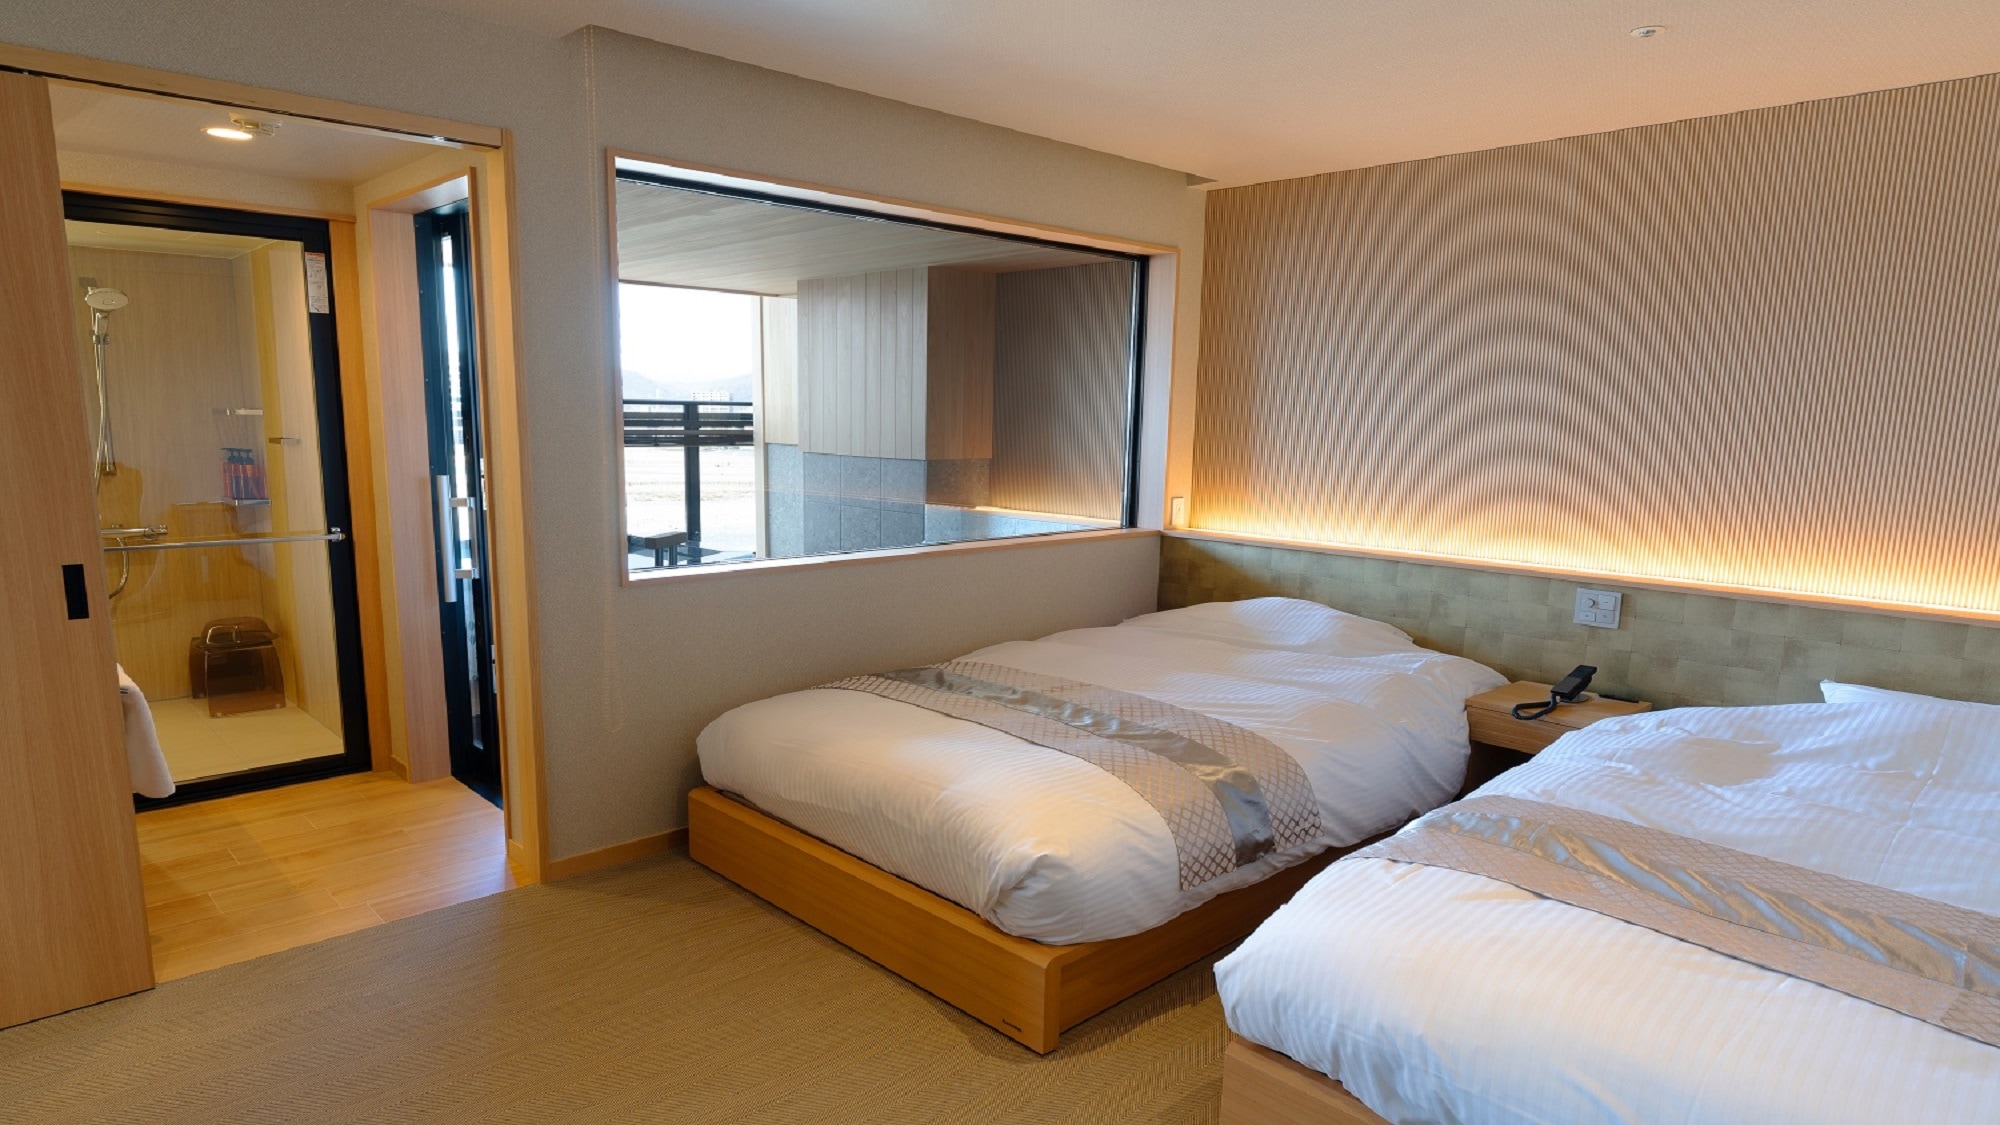 Special room "Minato minato" bedroom [No smoking]